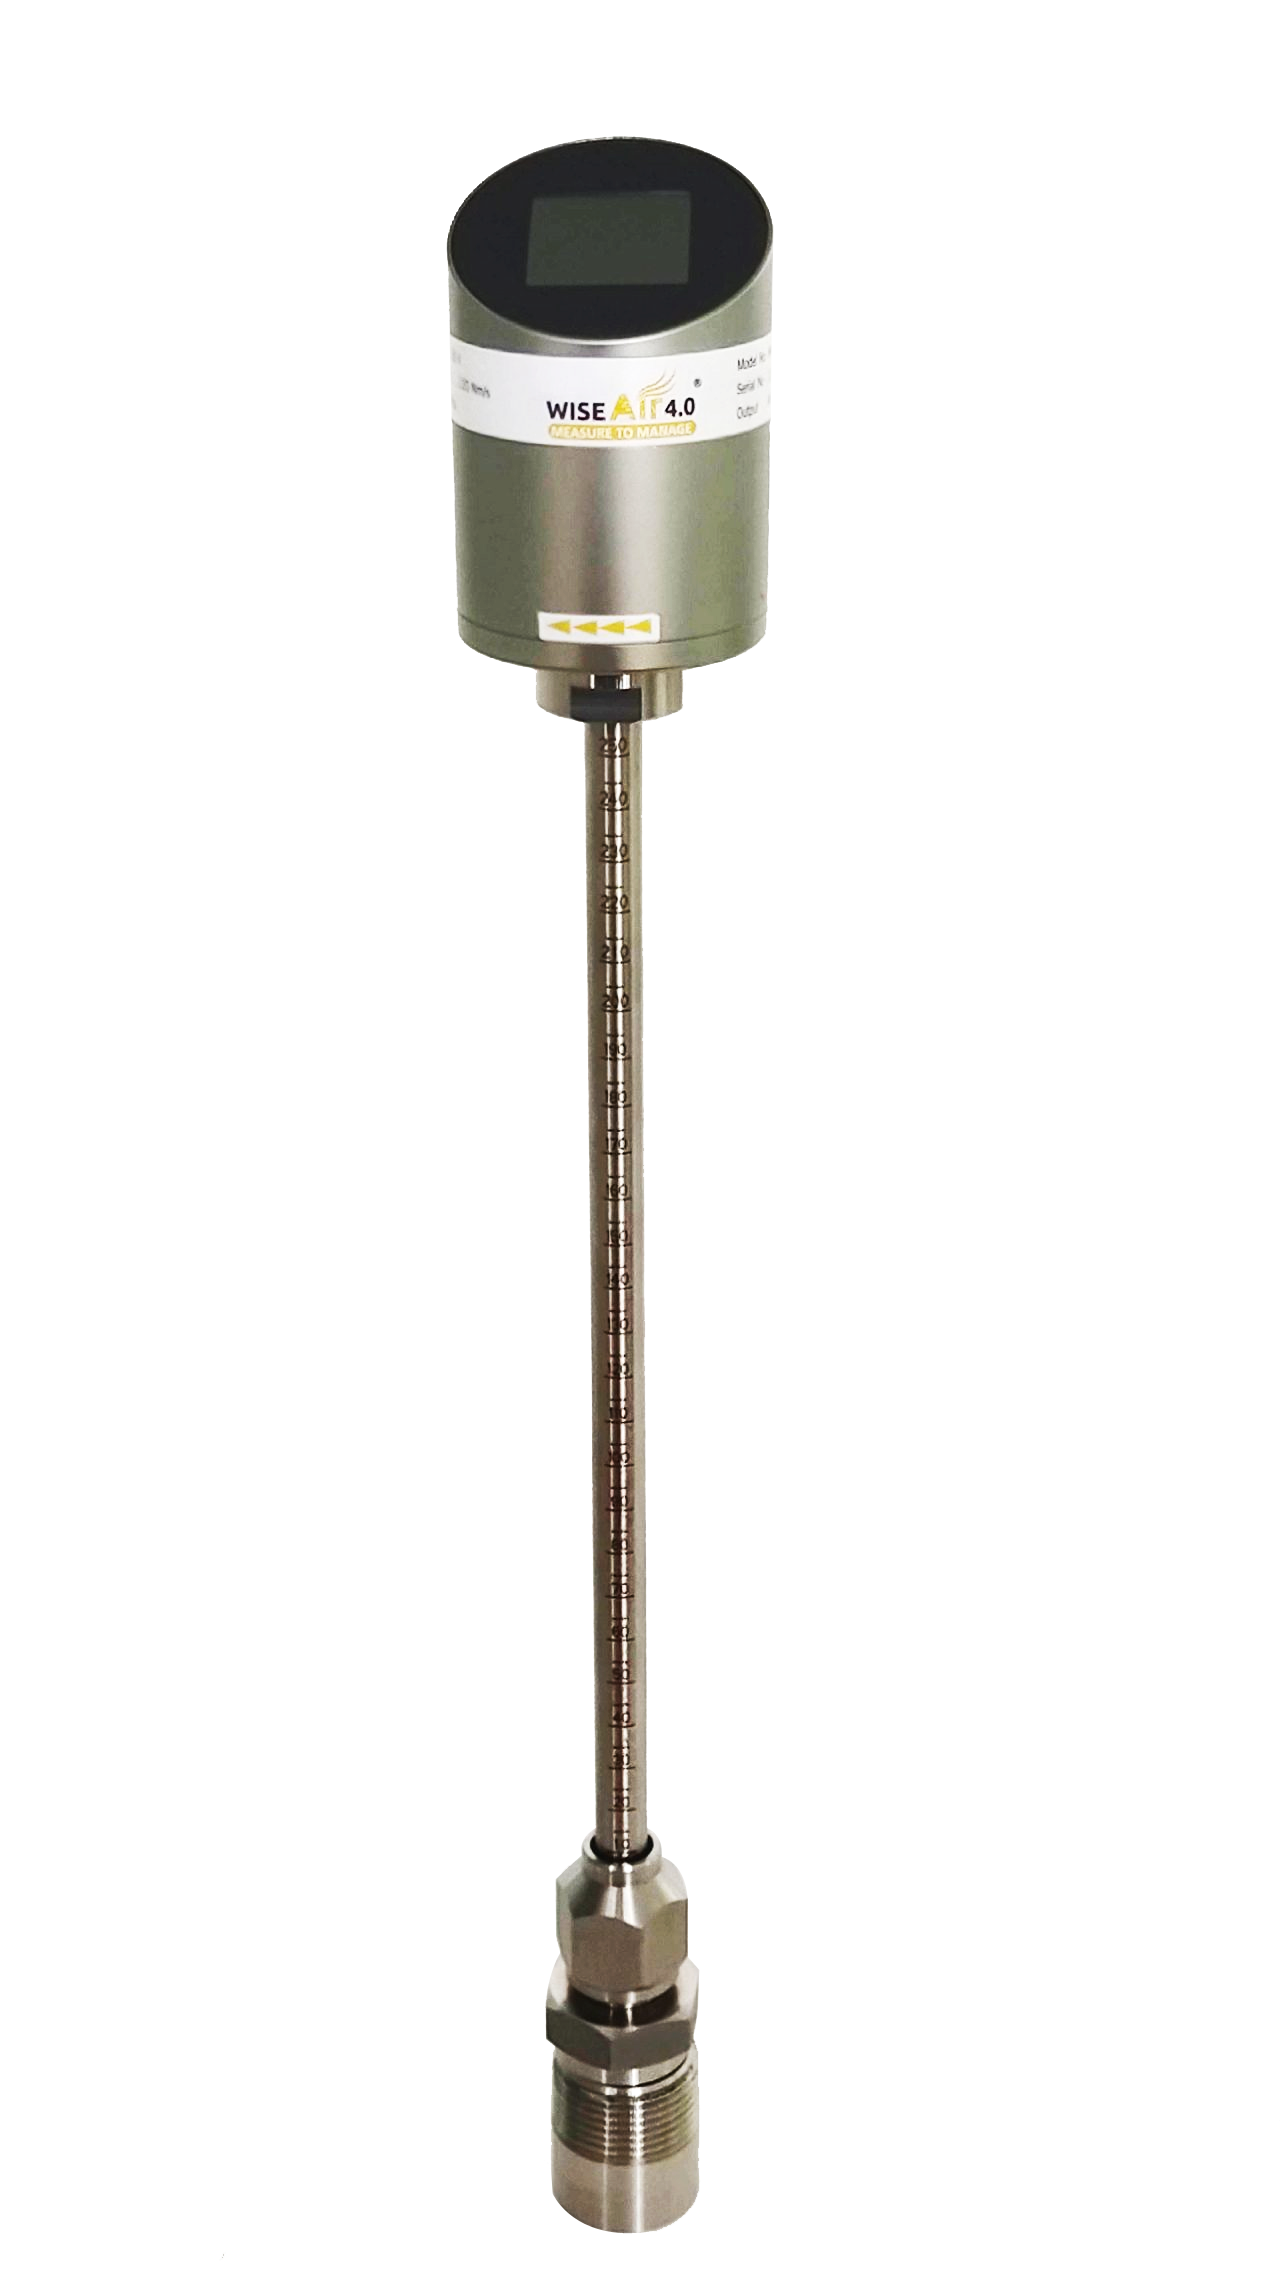 WAFS - 104 Thermal Mass Flow Sensor